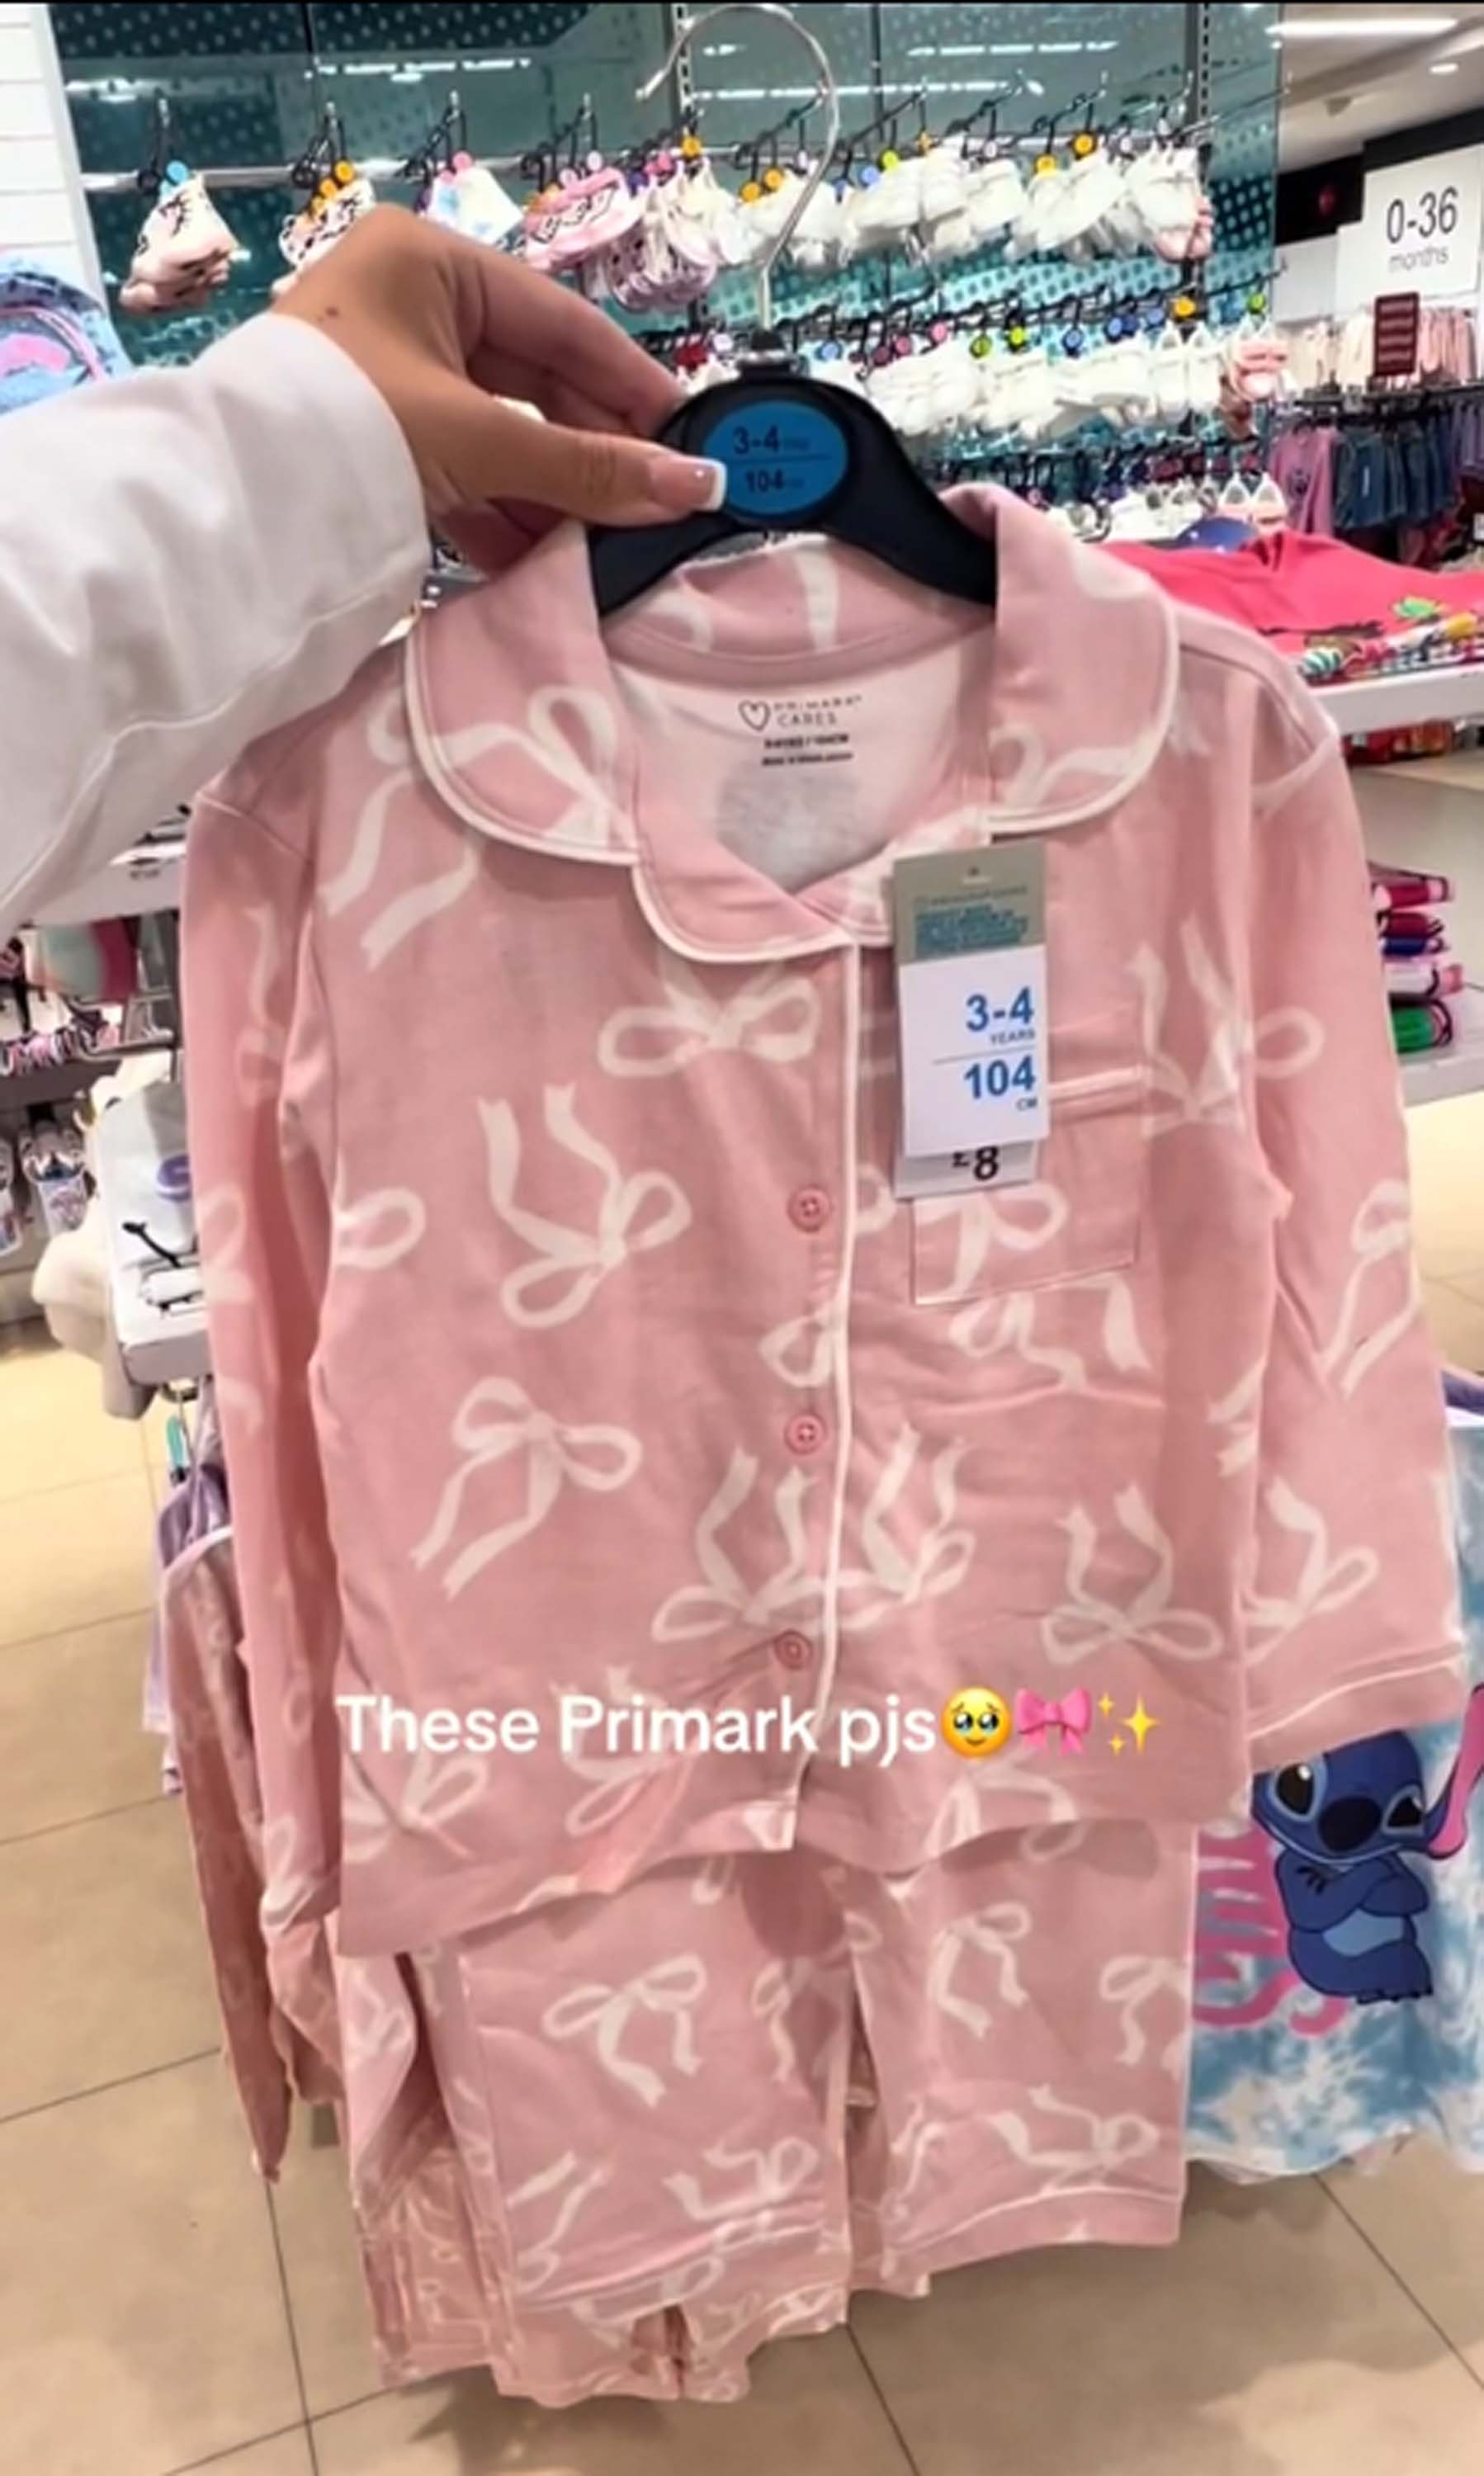 Los pijamas de £8 están cubiertos de lindos lazos rosas.